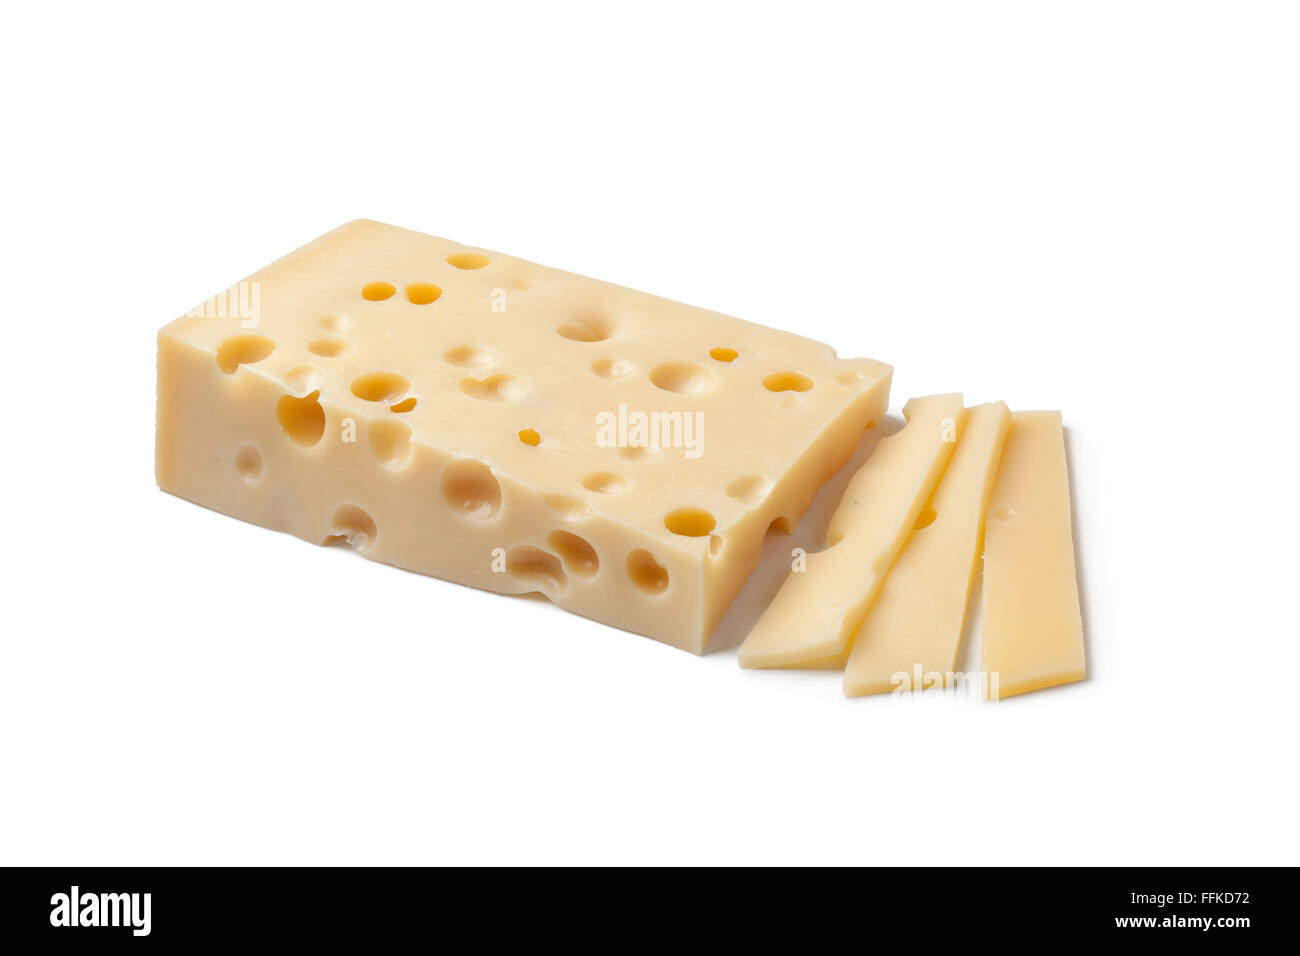 Morceau de fromage emmental suisse et des tranches sur fond blanc Banque D'Images